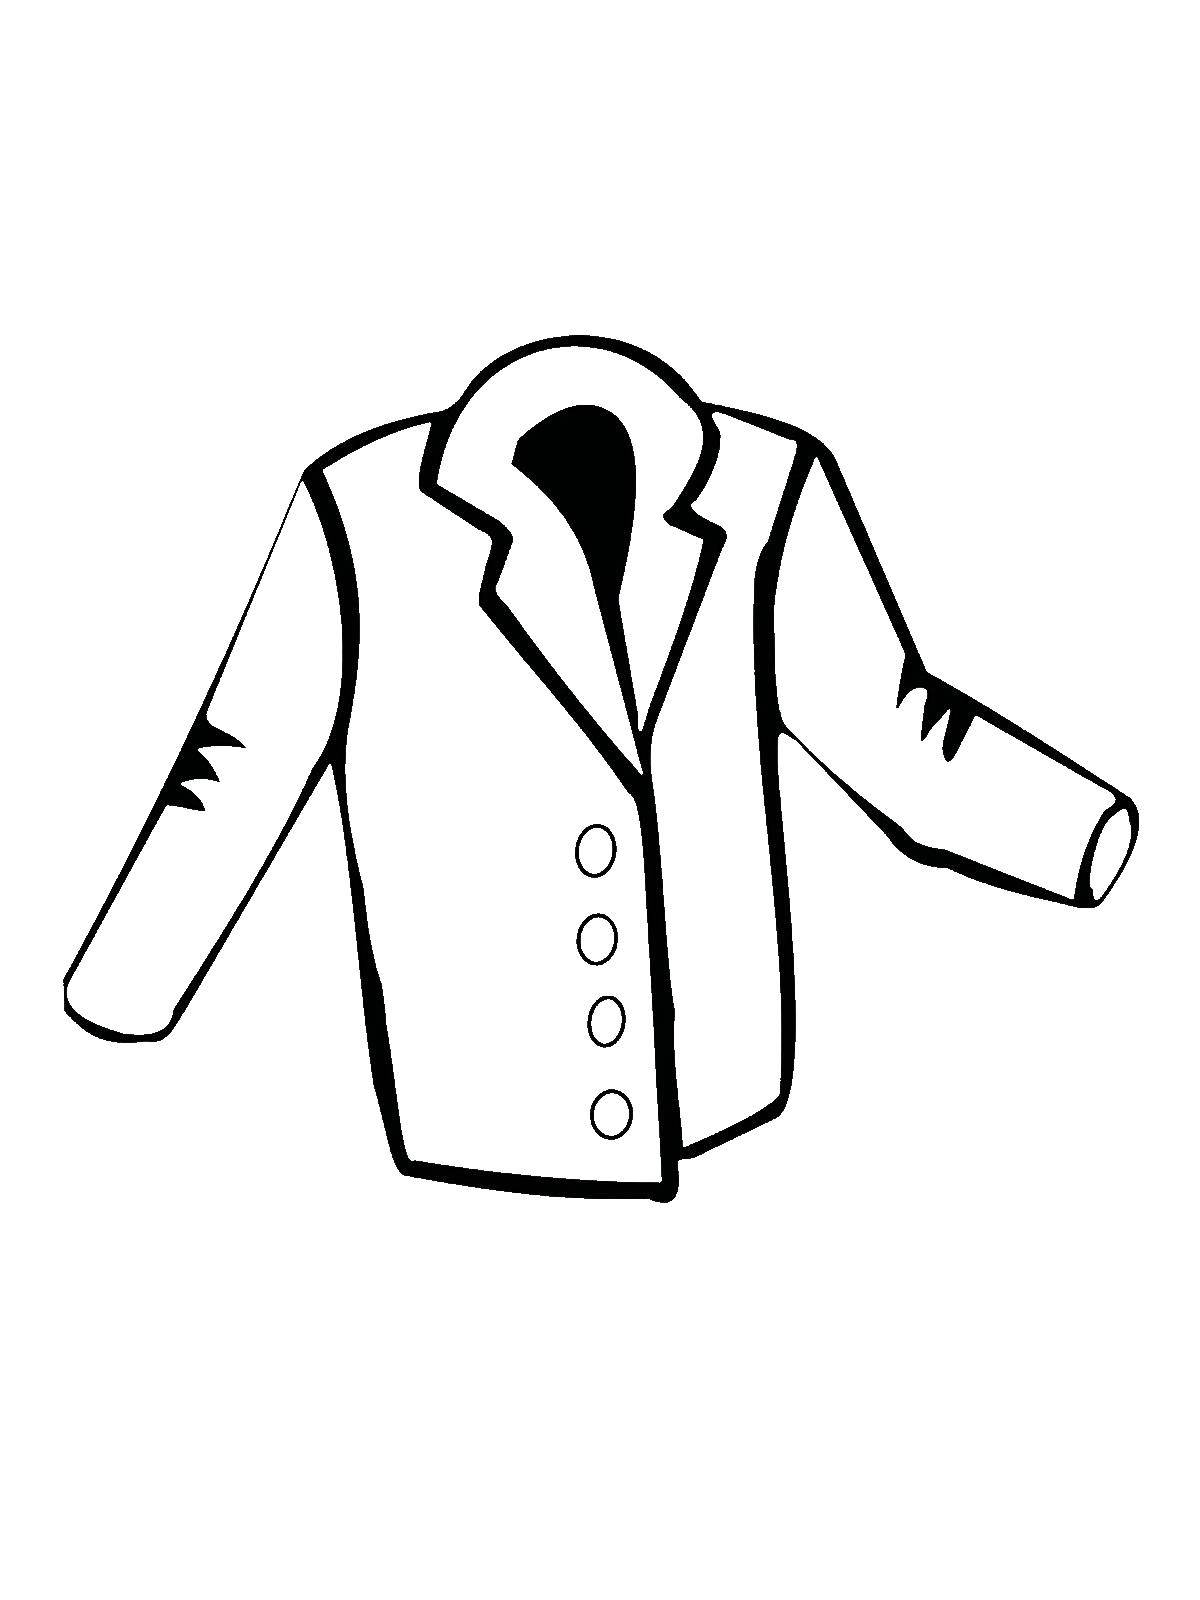 Coloring Мужской пиджак. Category Одежда. Tags:  Одежда, мужская, пиджак.